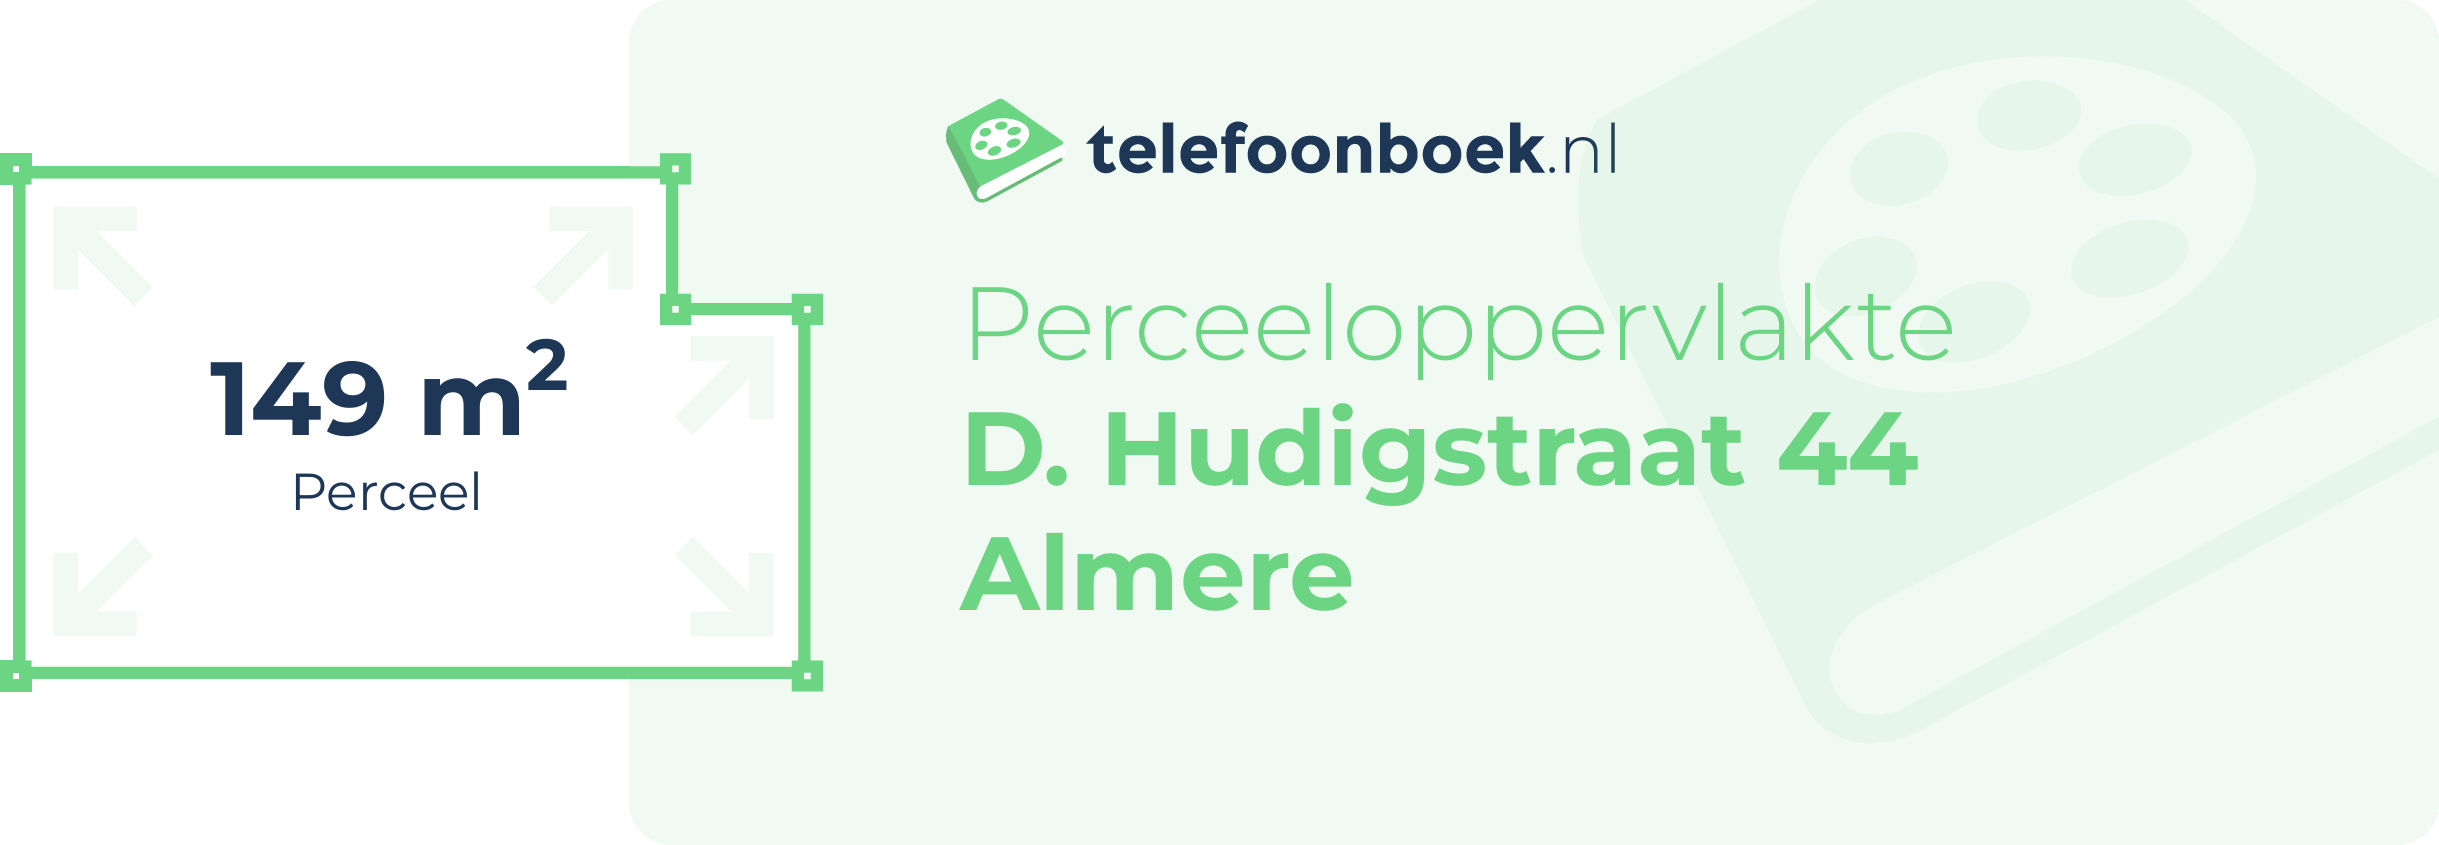 Perceeloppervlakte D. Hudigstraat 44 Almere